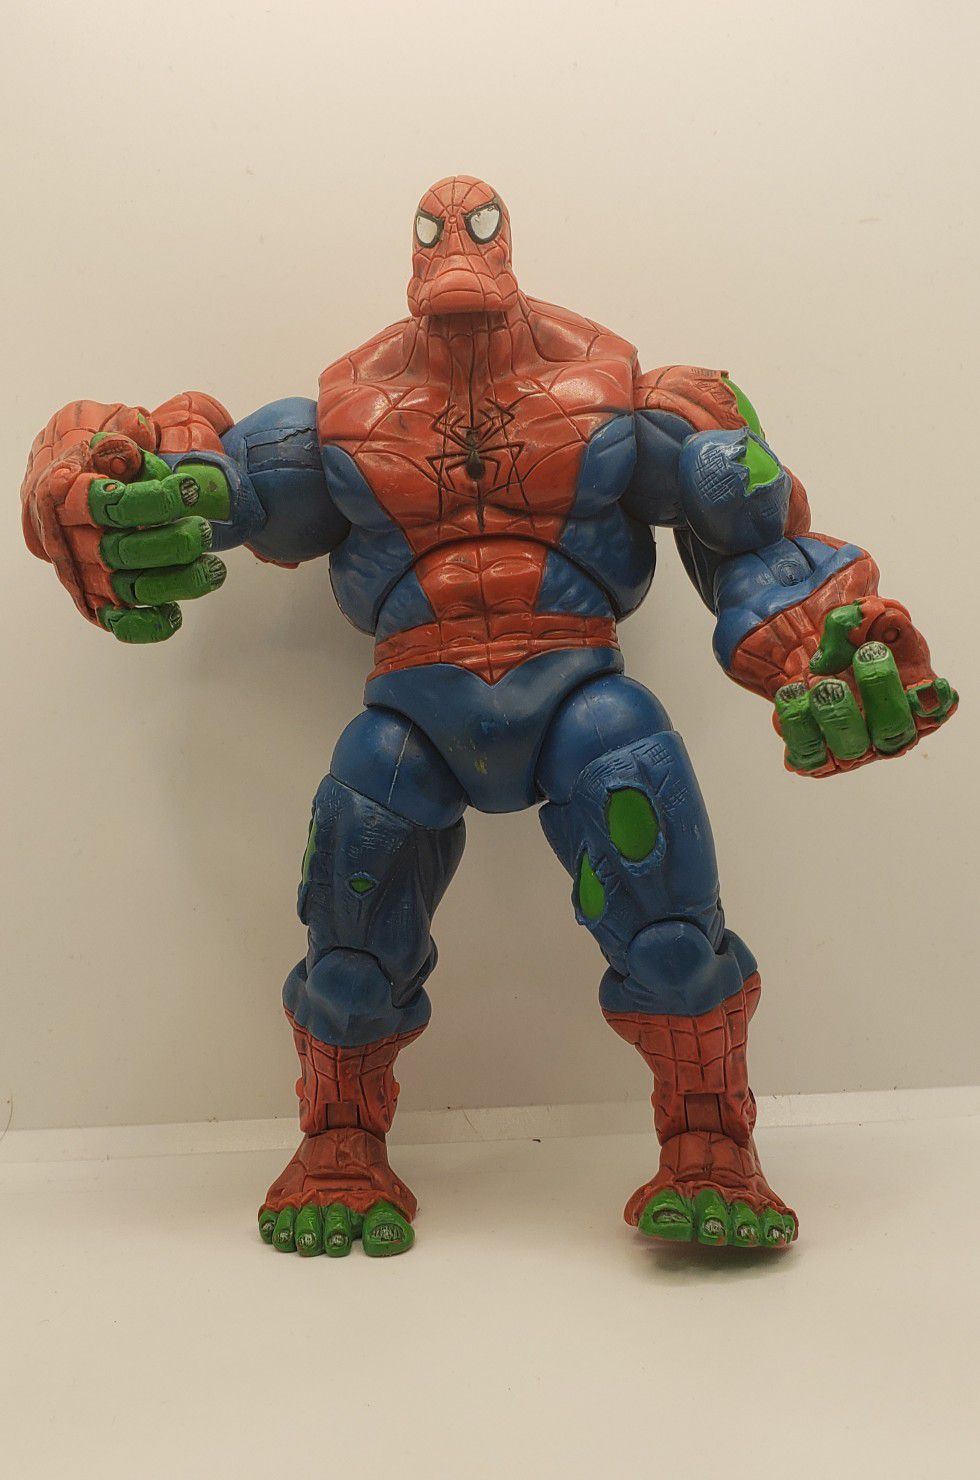 rare 2006 Toy Biz Spider-Hulk figure good condition / missing 1 finger